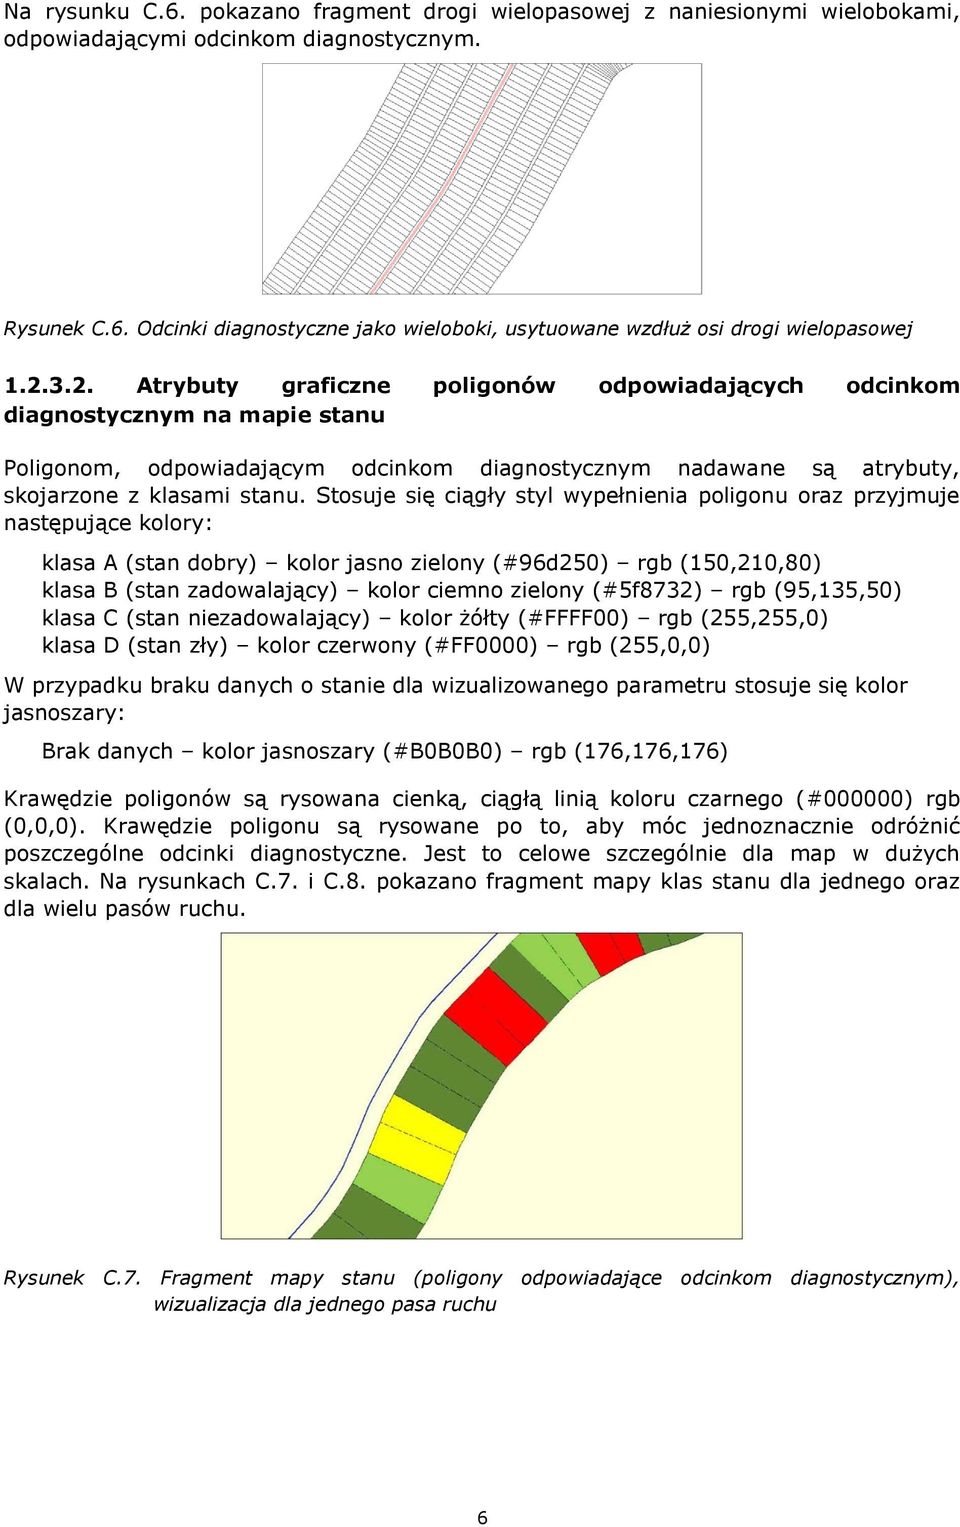 Stosuje się ciągły styl wypełnienia poligonu oraz przyjmuje następujące kolory: klasa A (stan dobry) kolor jasno zielony (#96d250) rgb (150,210,80) klasa B (stan zadowalający) kolor ciemno zielony